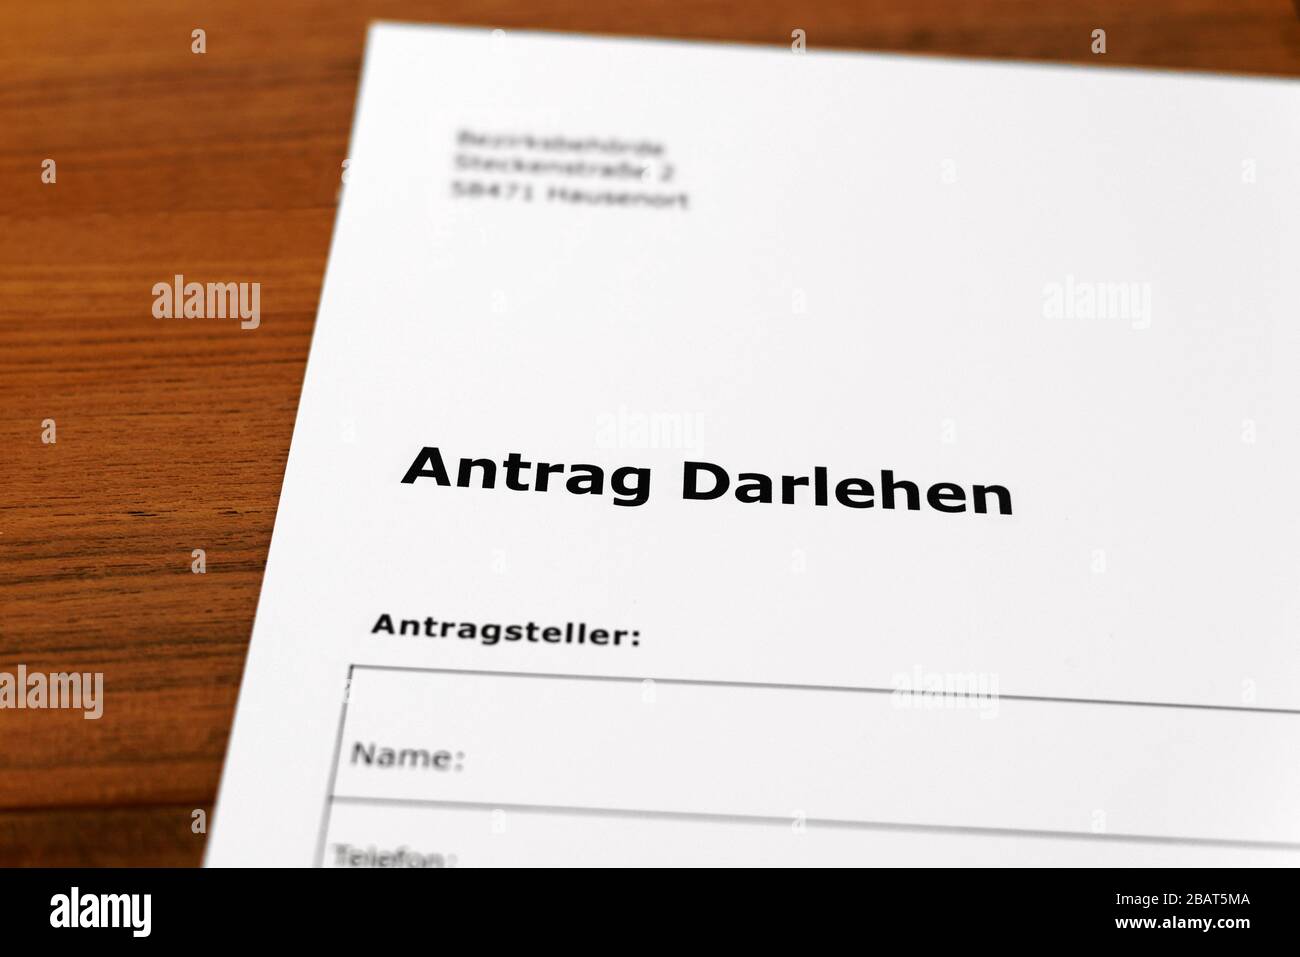 Une feuille de papier avec les mots allemands 'Antrag Darlehen' - Traduction en englisch: Demande de prêt. Banque D'Images